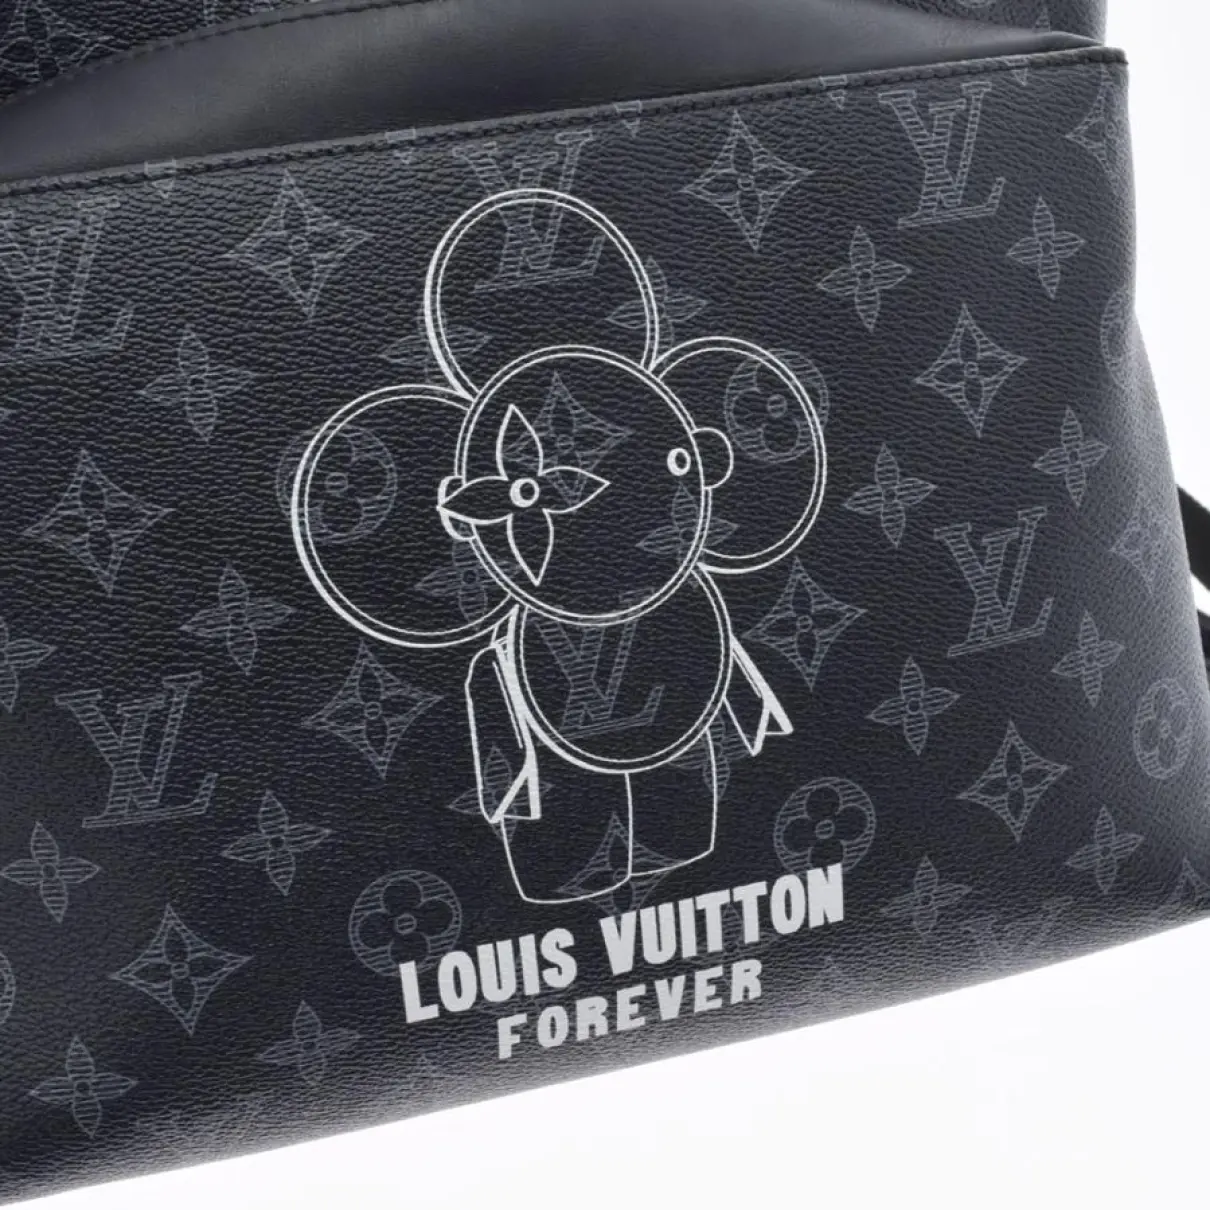 Apollo Backpack leather handbag Louis Vuitton